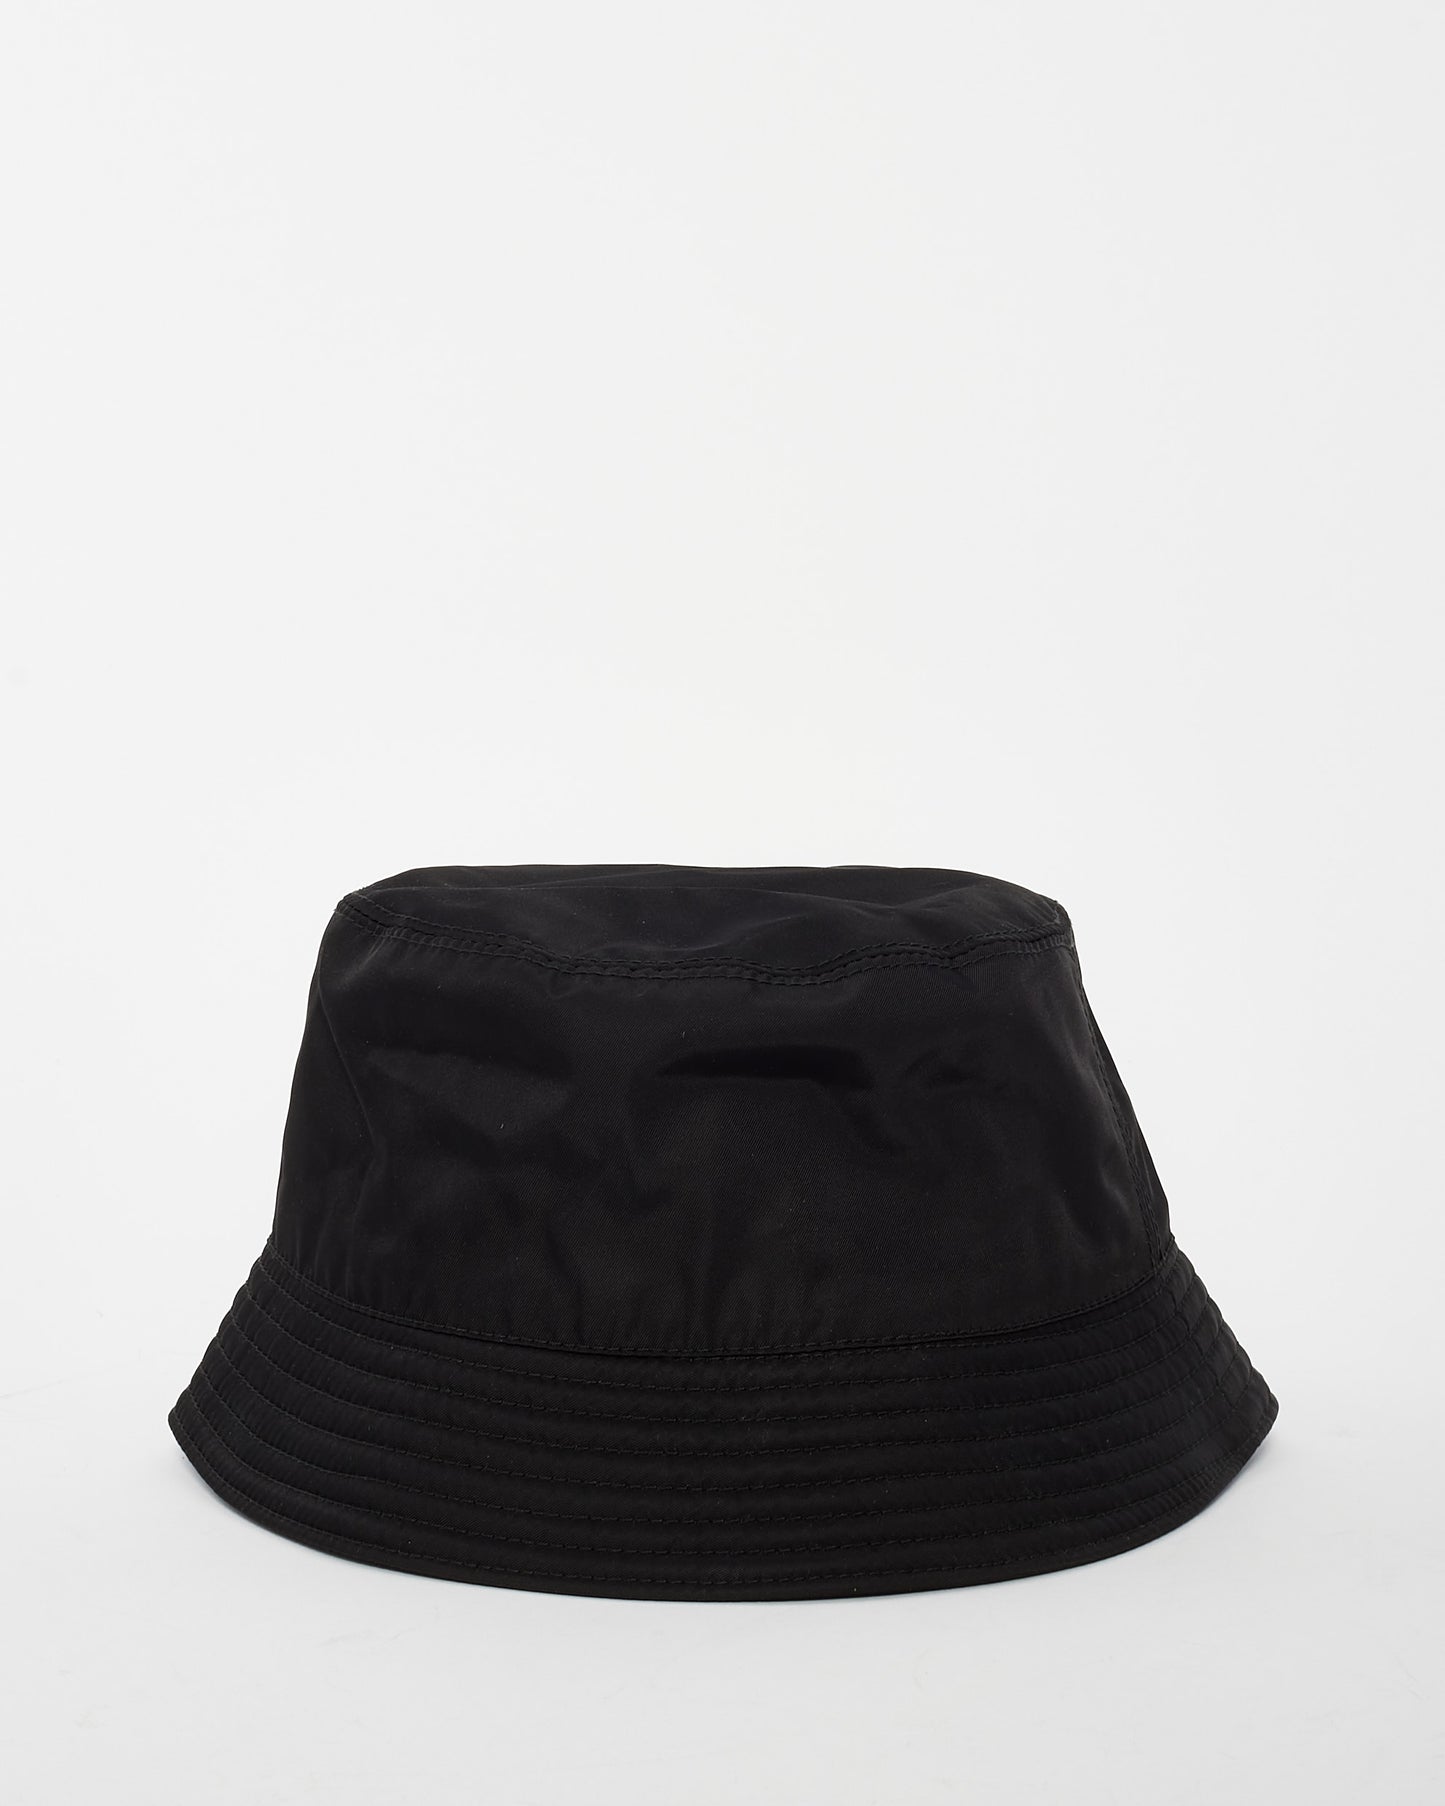 Prada Black Nylon Logo Bucket Hat - L